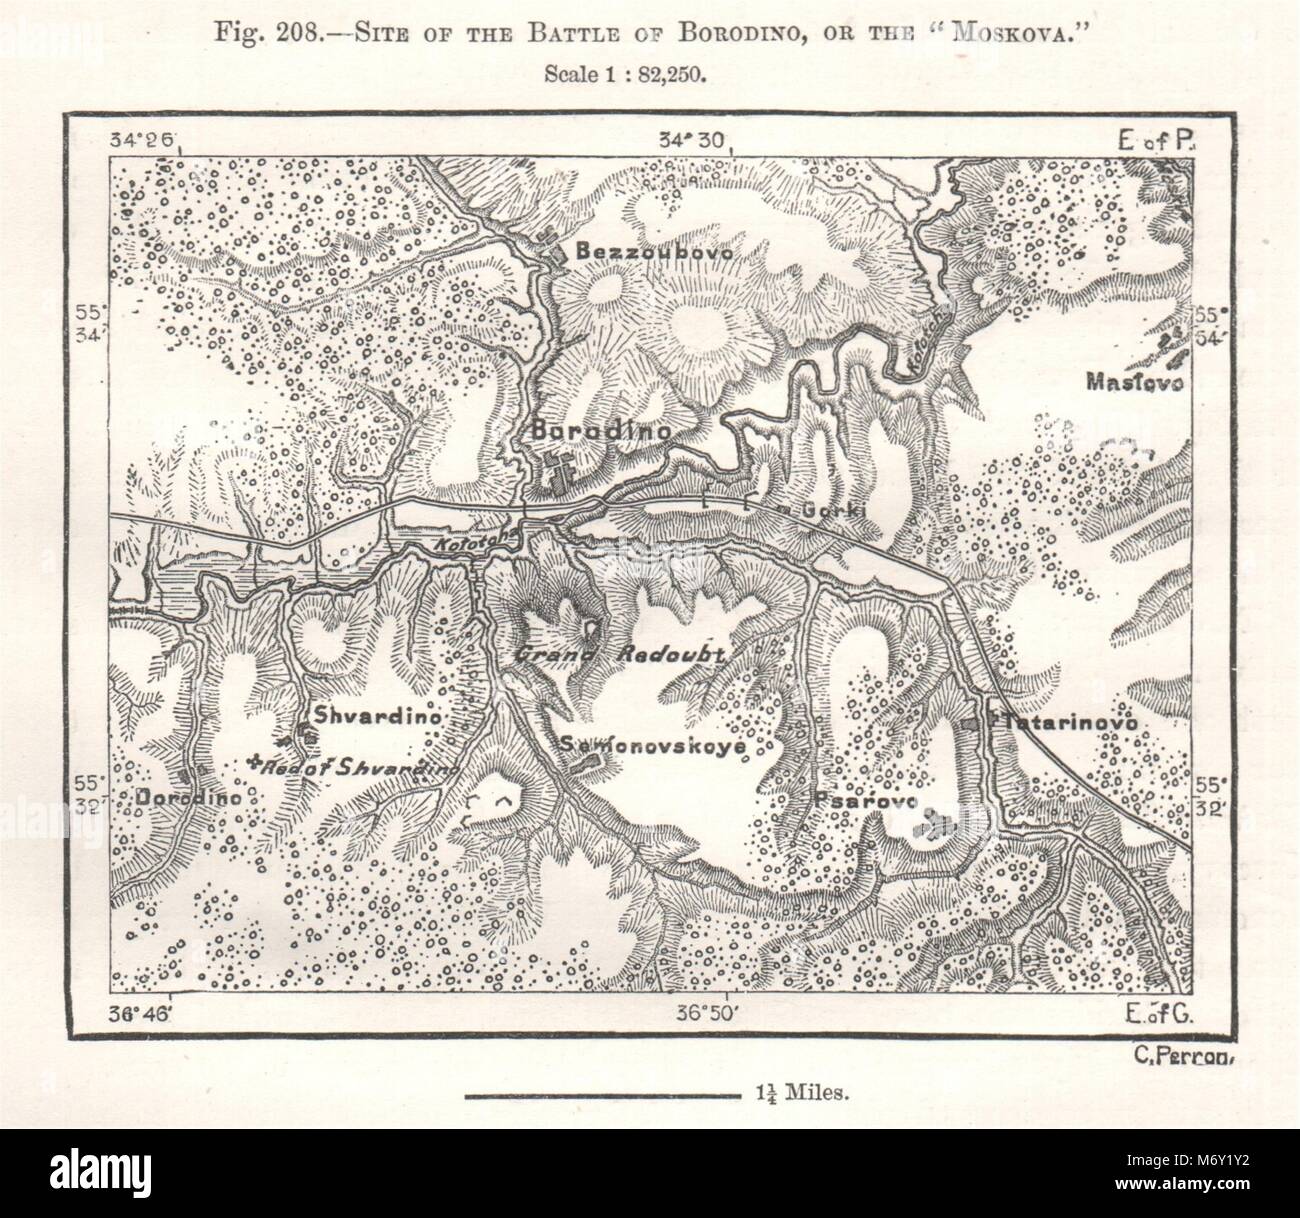 Site de la bataille de Borodino, ou 'Moskova'. La Russie. Croquis 1885 Banque D'Images